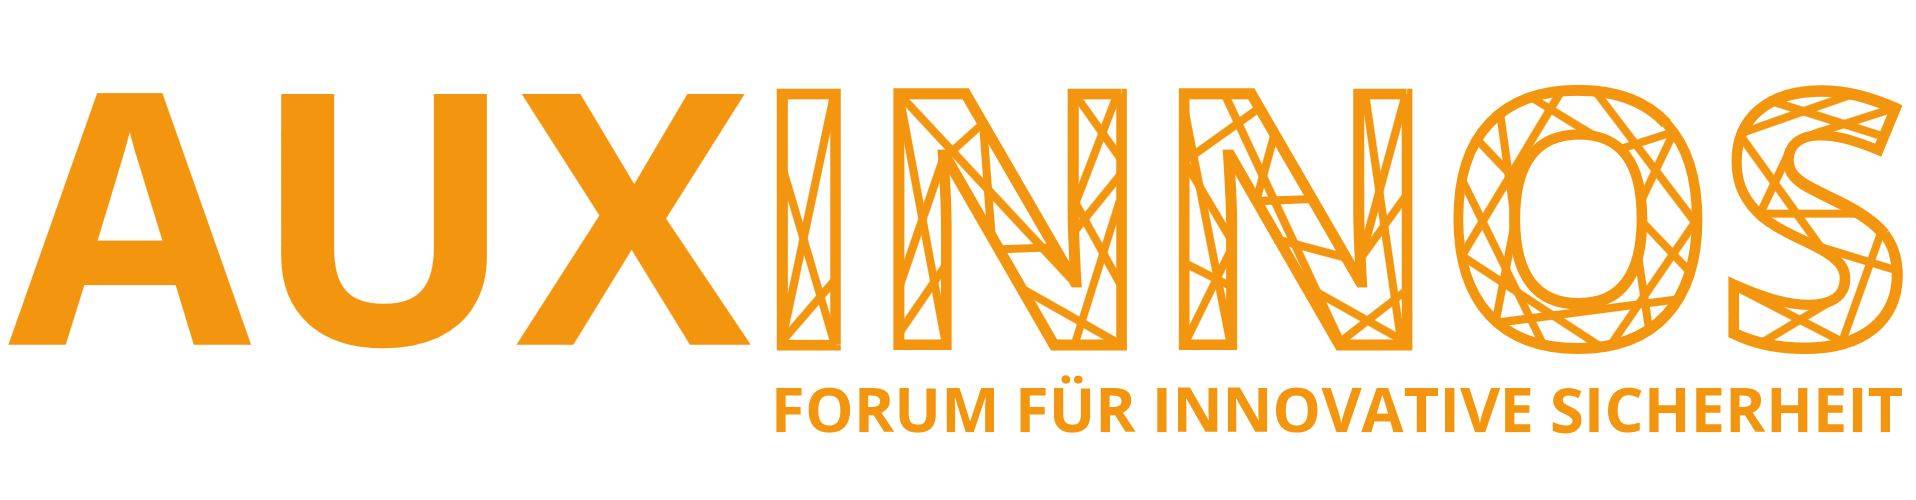 AUXINNOS 2020 Forum für innovative Sicherheit